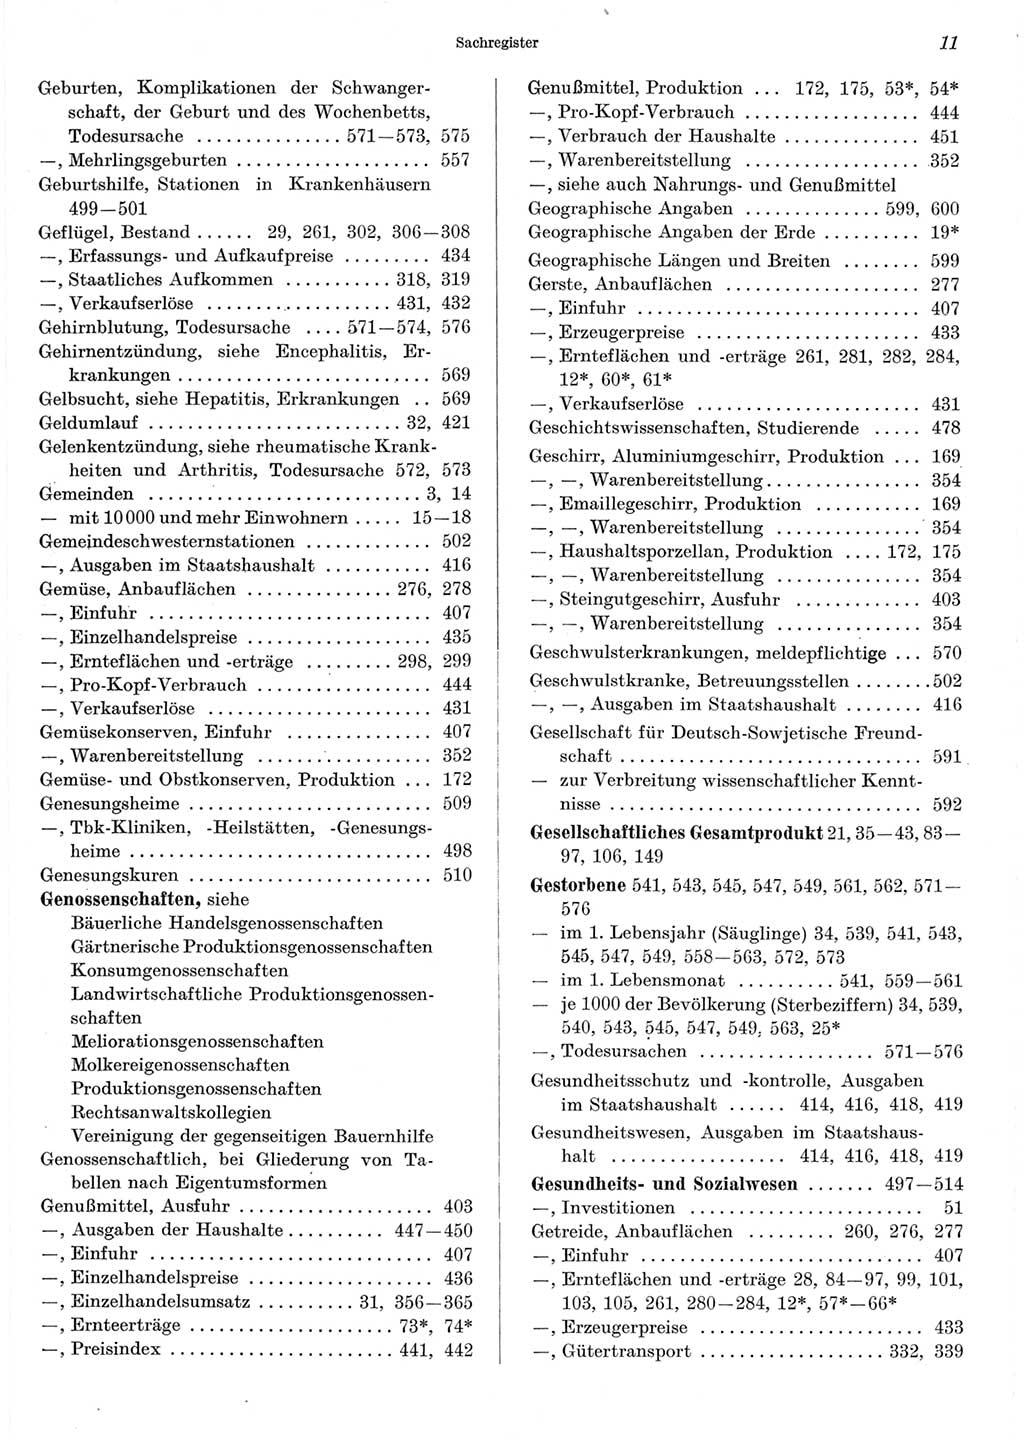 Statistisches Jahrbuch der Deutschen Demokratischen Republik (DDR) 1967, Seite 11 (Stat. Jb. DDR 1967, S. 11)